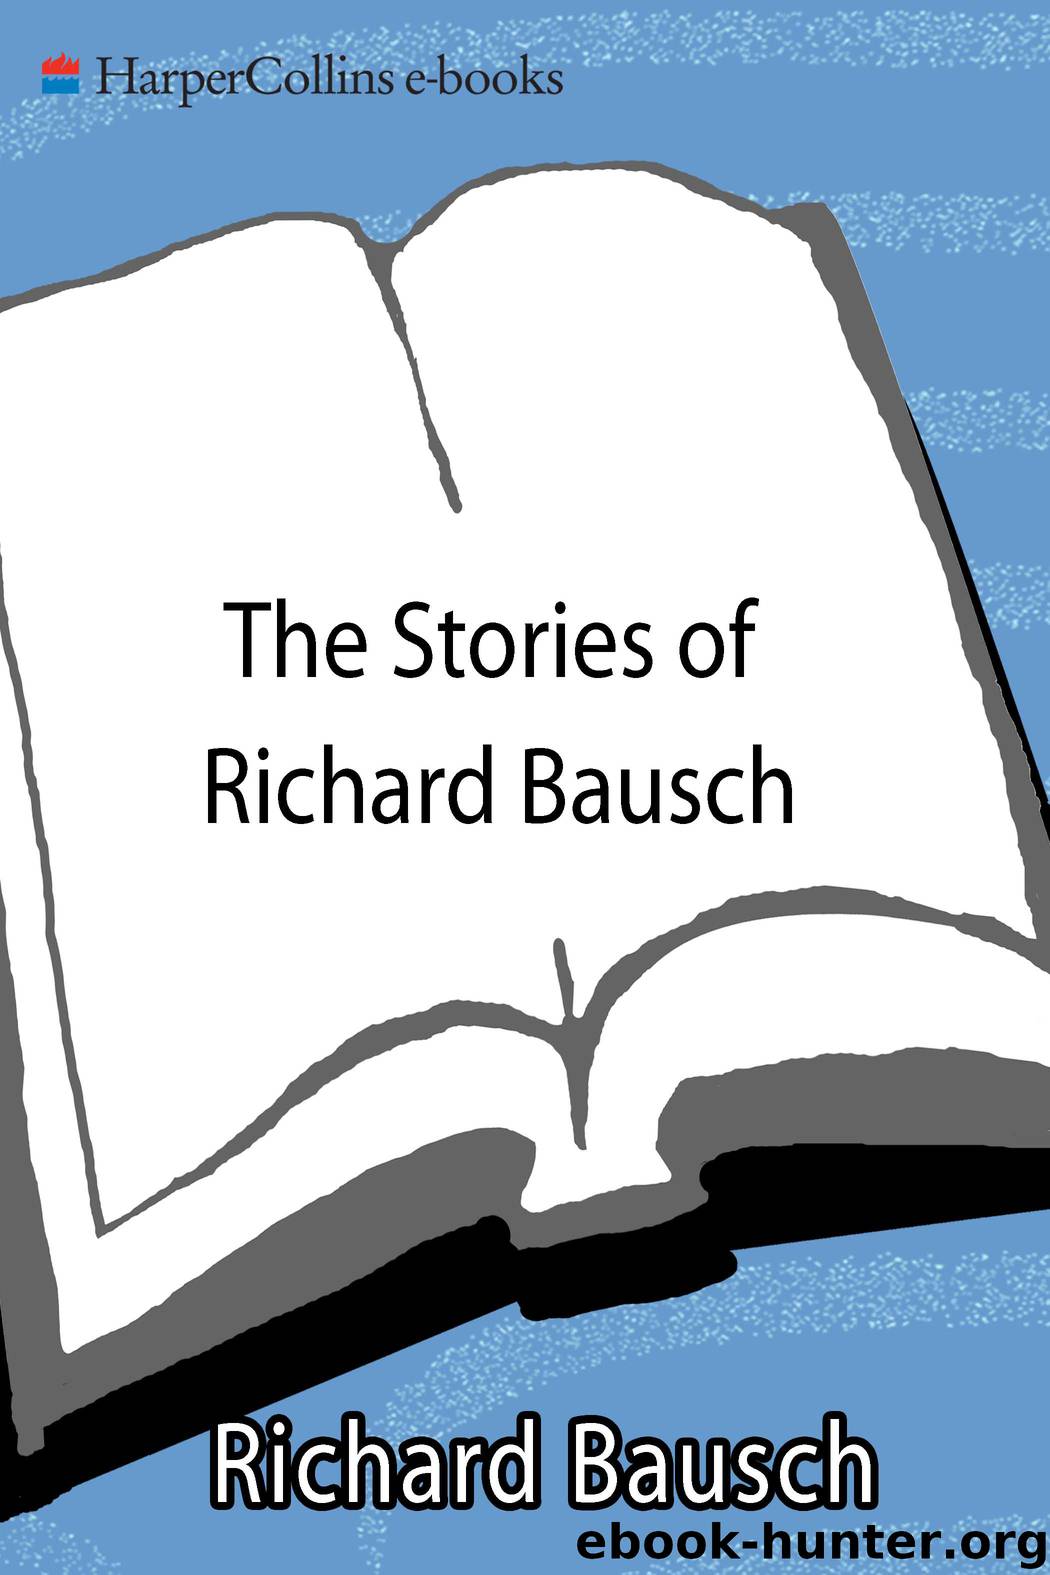 The Stories of Richard Bausch by Richard Bausch